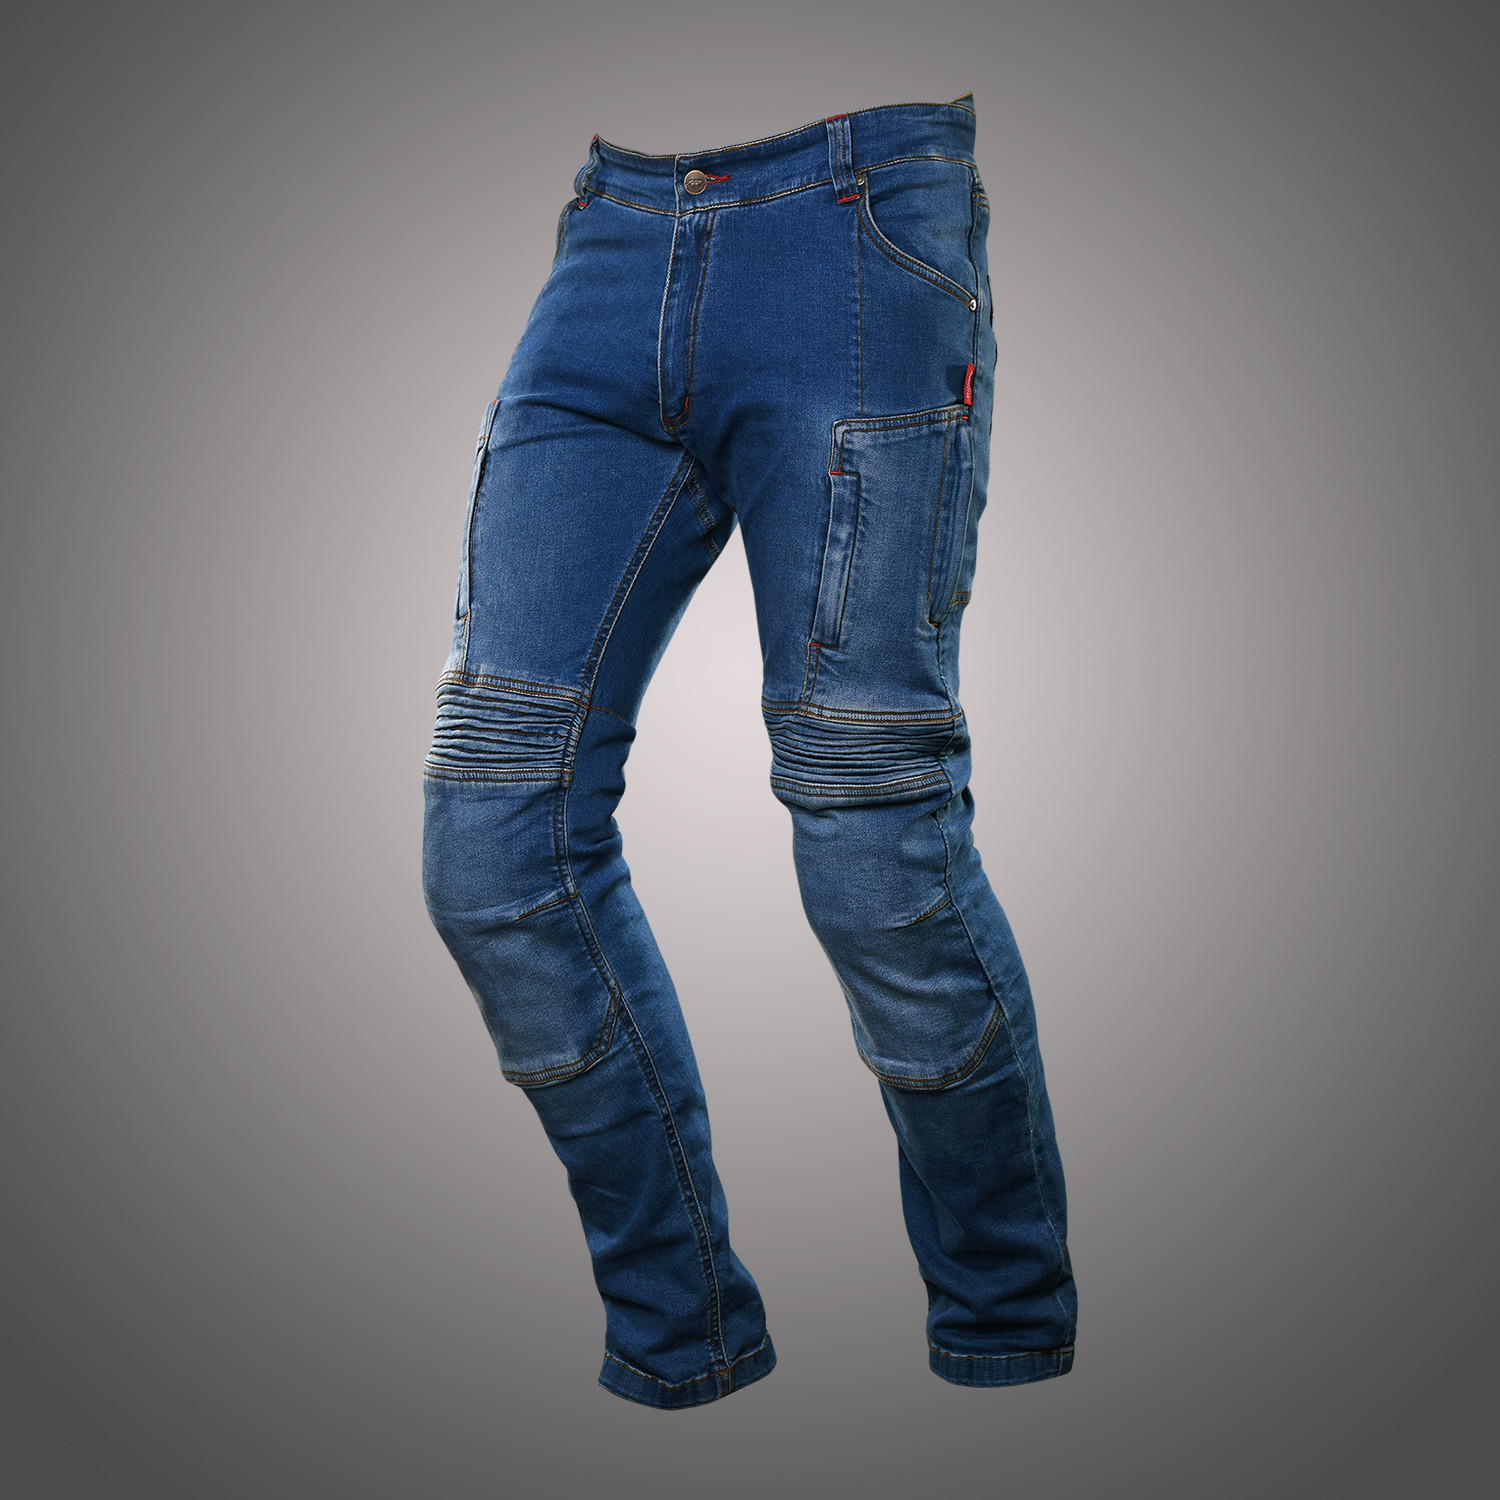 4SR motorbroeken- Kevlar kevlar jeans motorbroek, Kevlar motorjeans